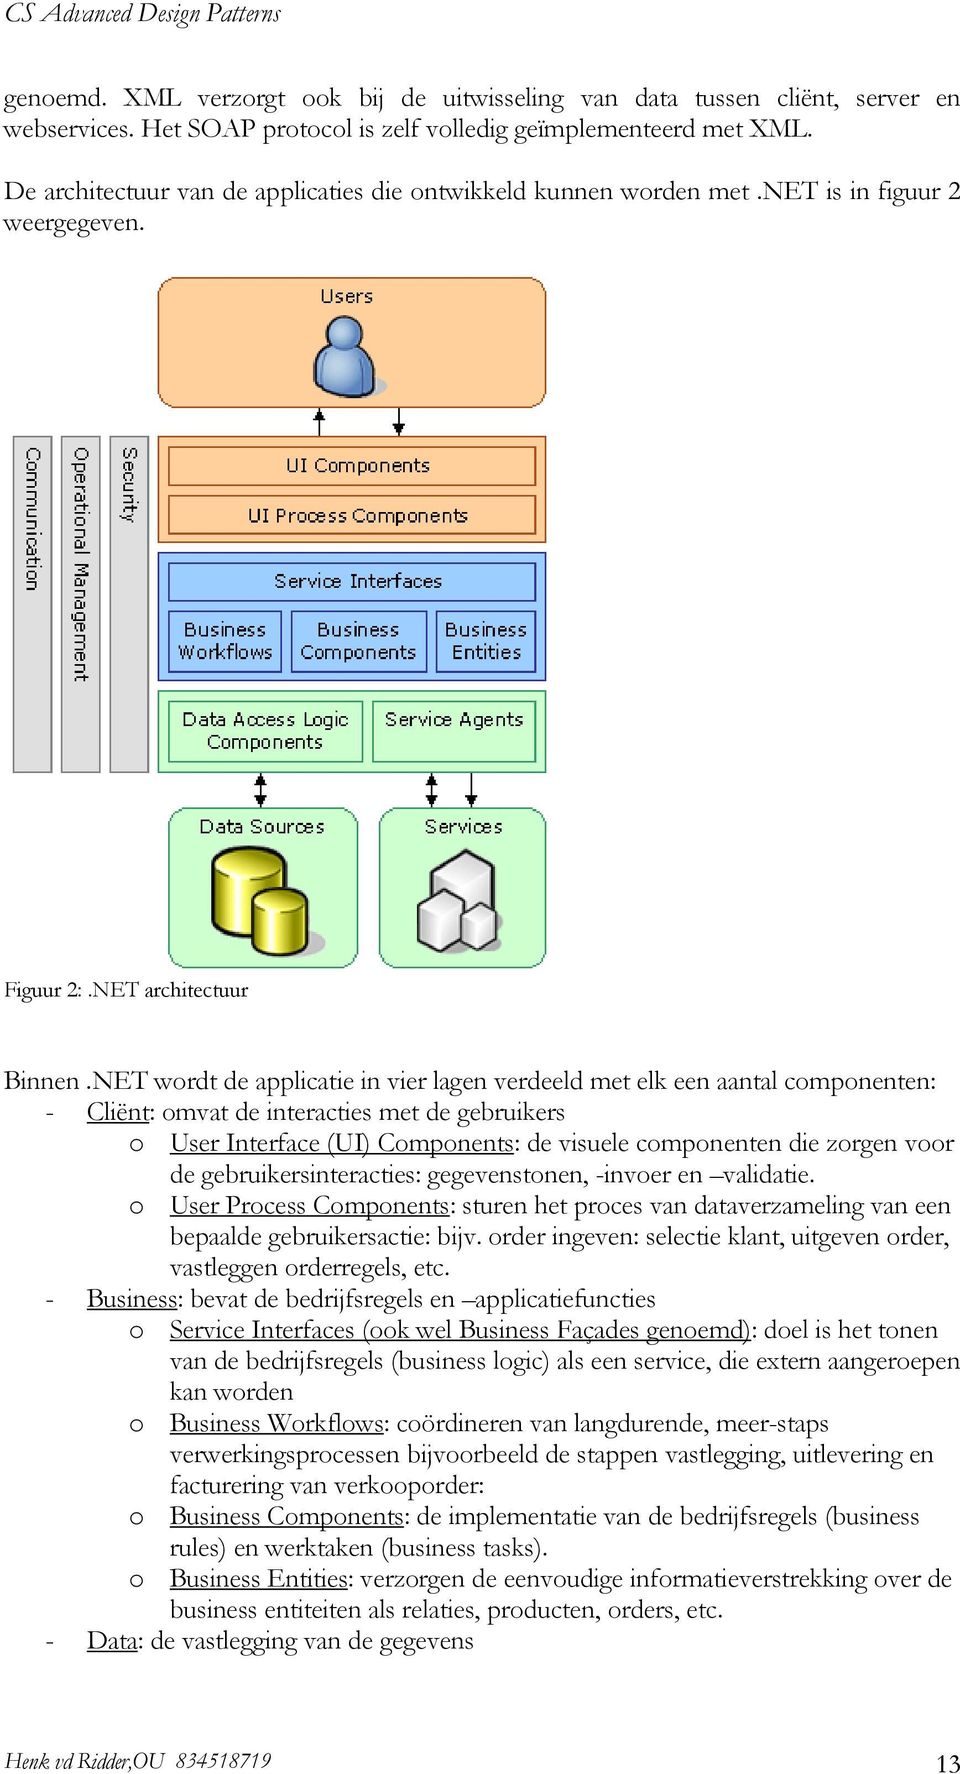 NET wordt de applicatie in vier lagen verdeeld met elk een aantal componenten: - Cliënt: omvat de interacties met de gebruikers o User Interface (UI) Components: de visuele componenten die zorgen